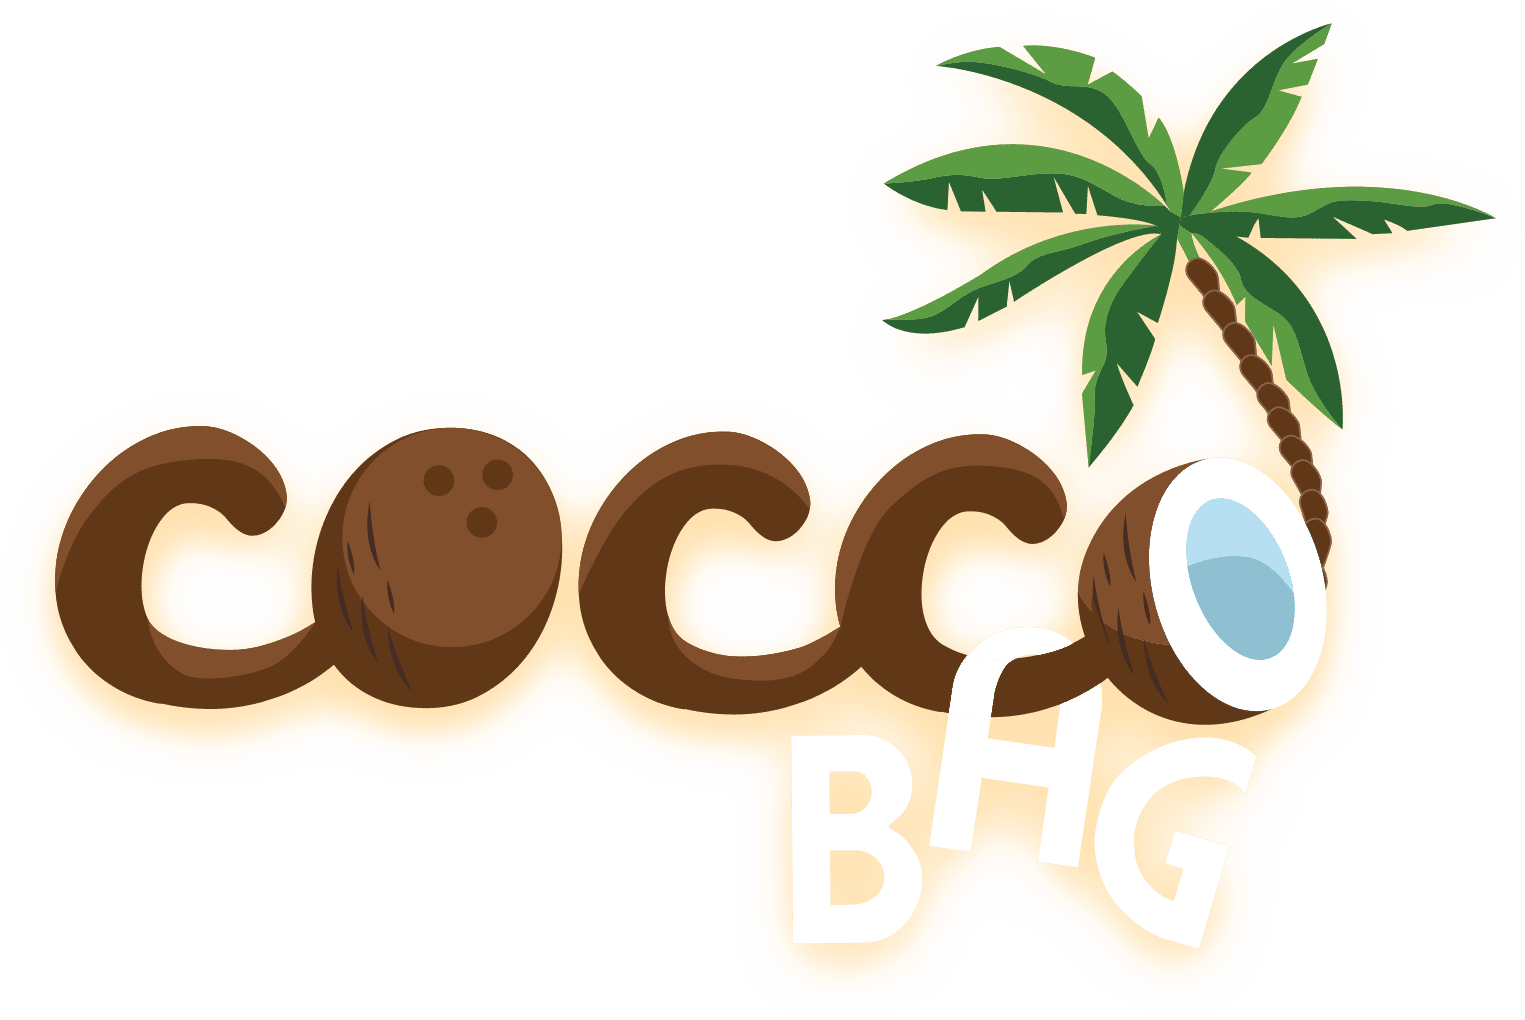 coccobag